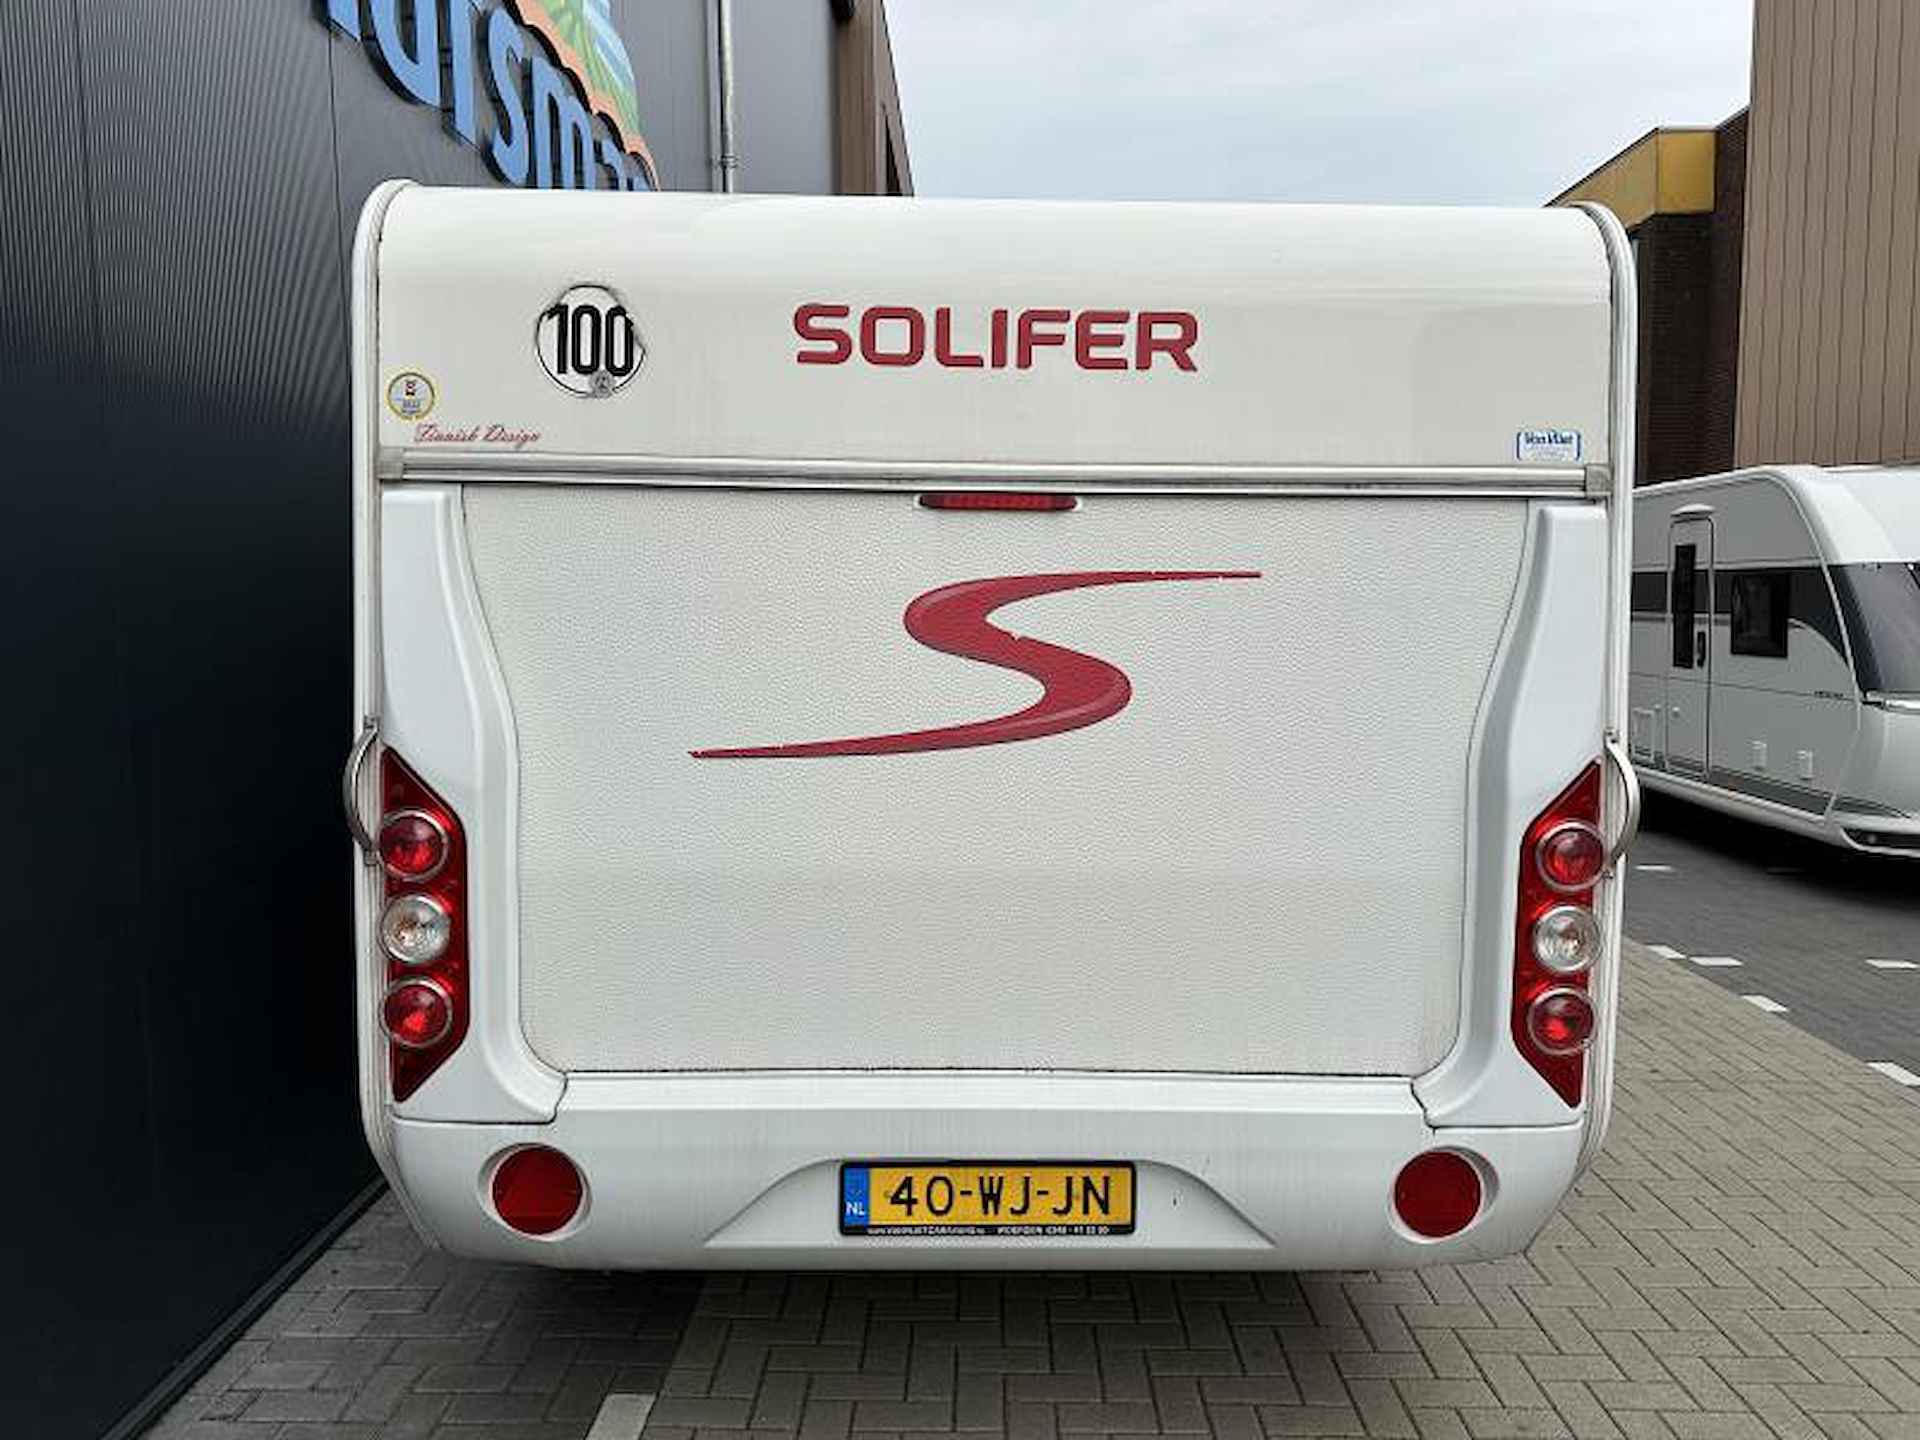 Solifer Artic 560 Mover & Voortent - 5/20